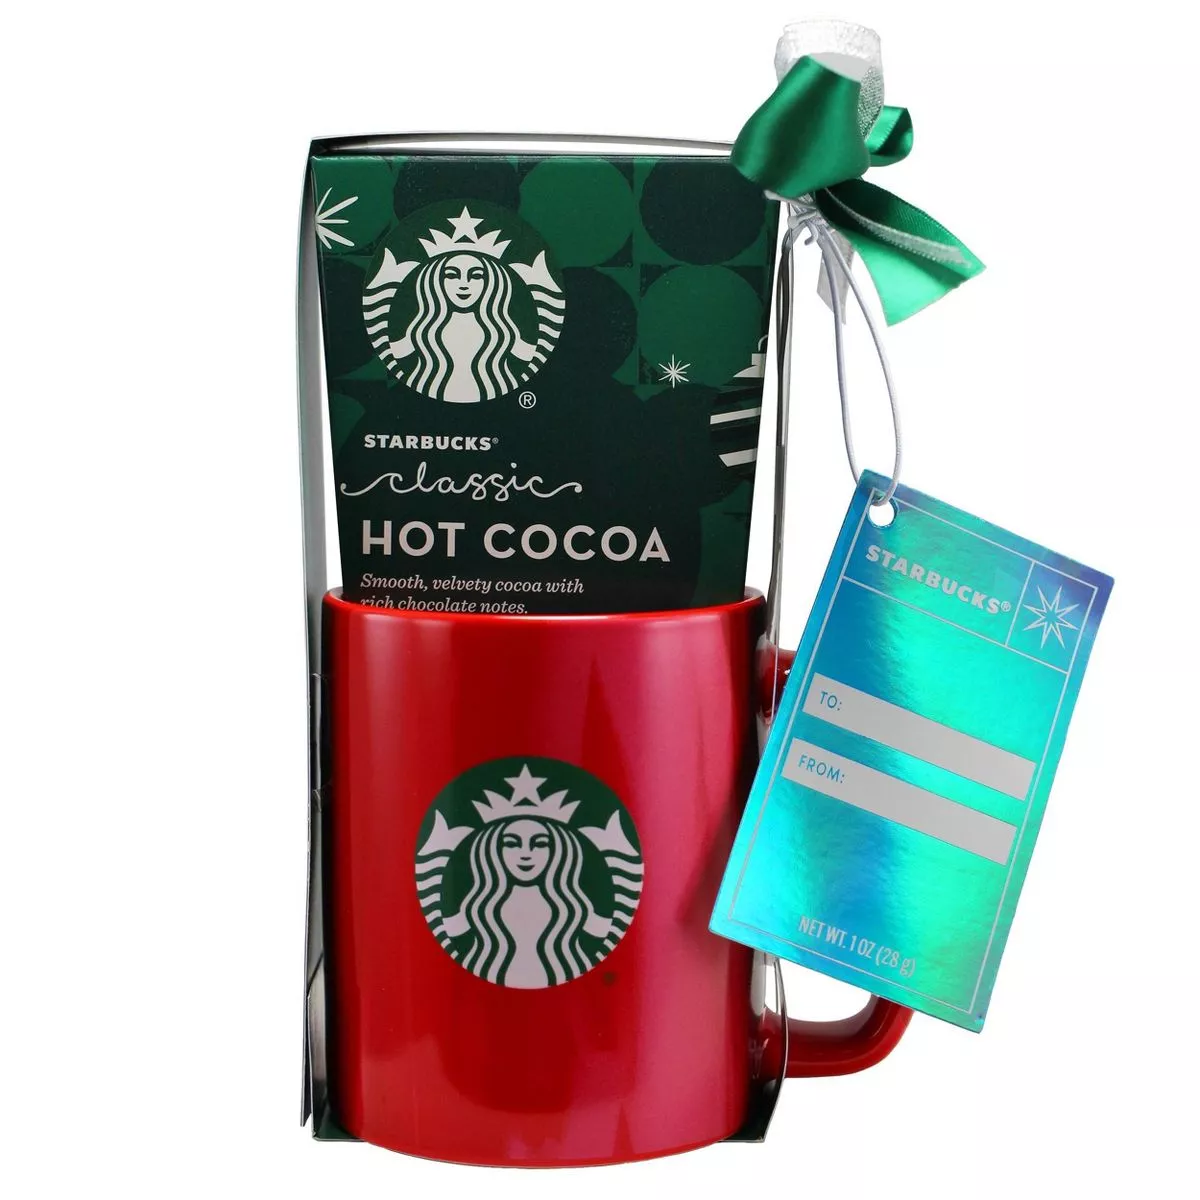 Starbucks Cocoa for 2, Includes 2 Starbucks Mugs and 2 Cocoa